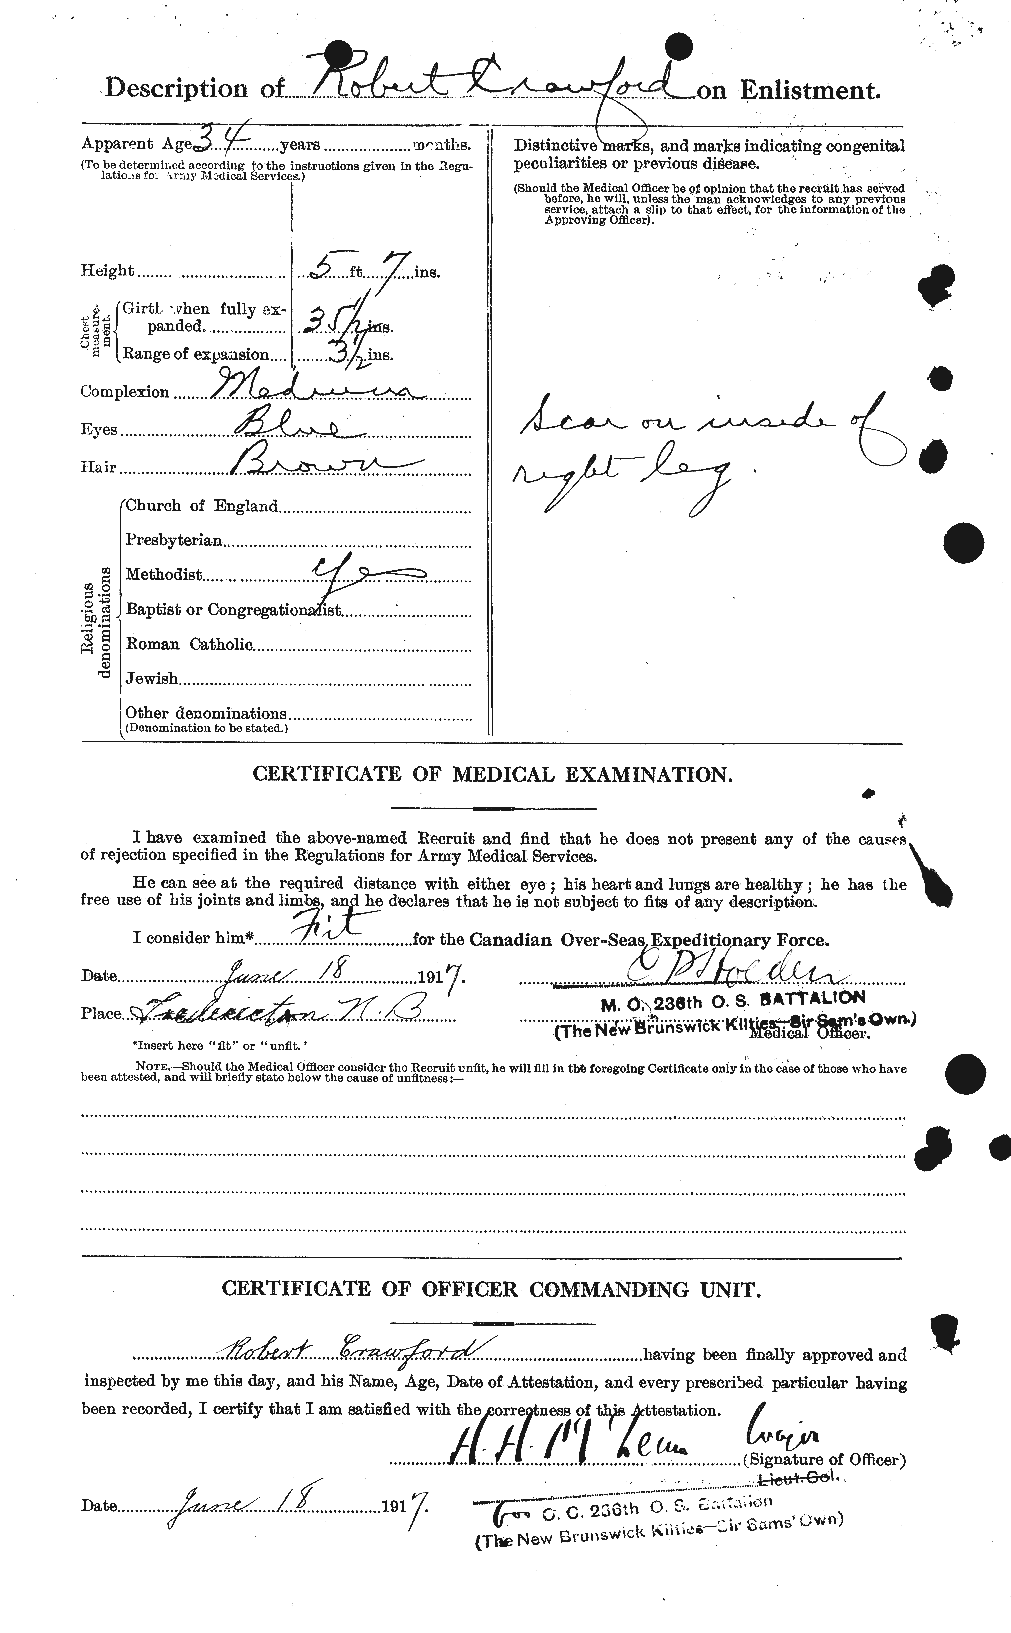 Dossiers du Personnel de la Première Guerre mondiale - CEC 061642b